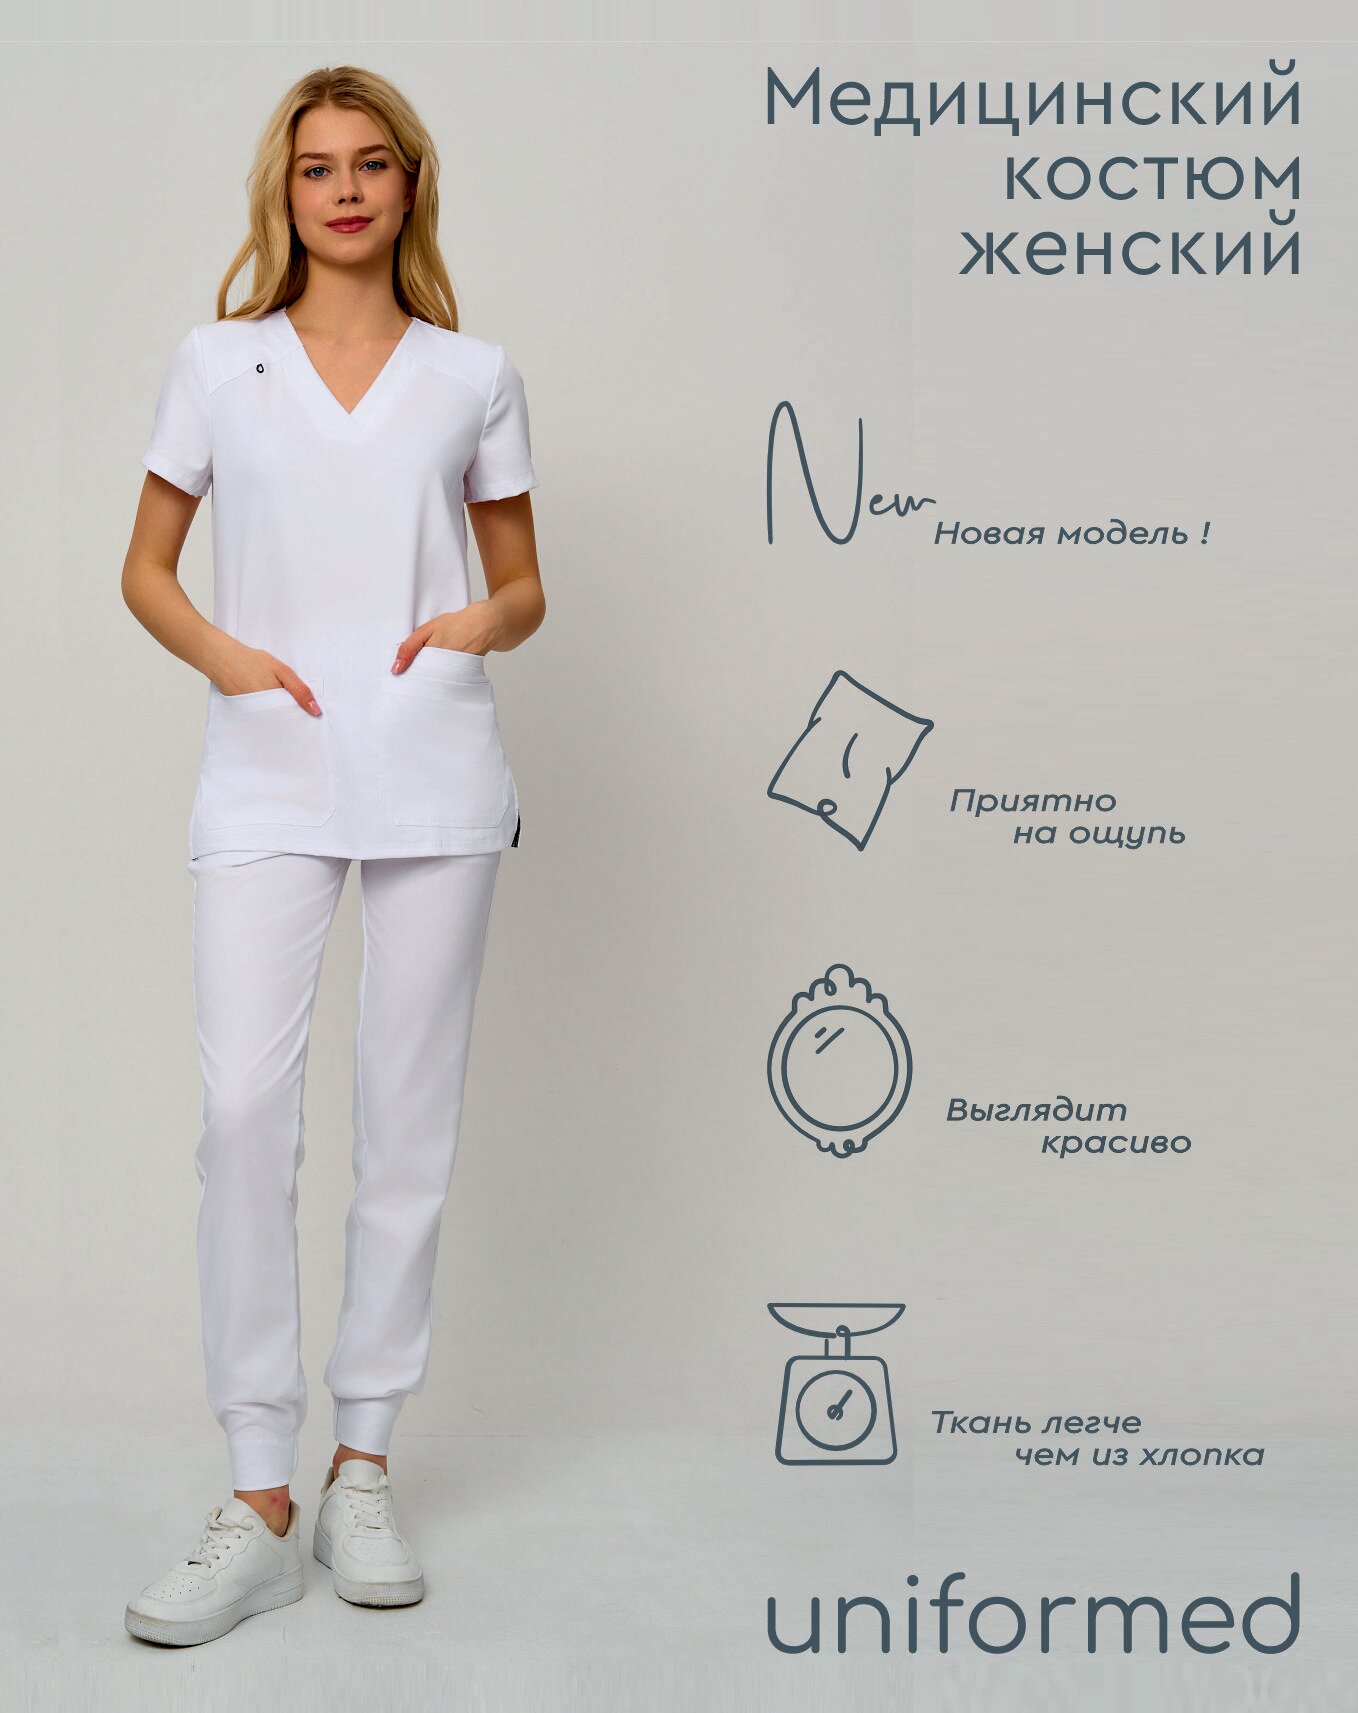 Медицинский женский костюм 419.5.1 Uniformed, ткань вискоза стрейч, рукав короткий, цвет белый, отделка черная, размер 52